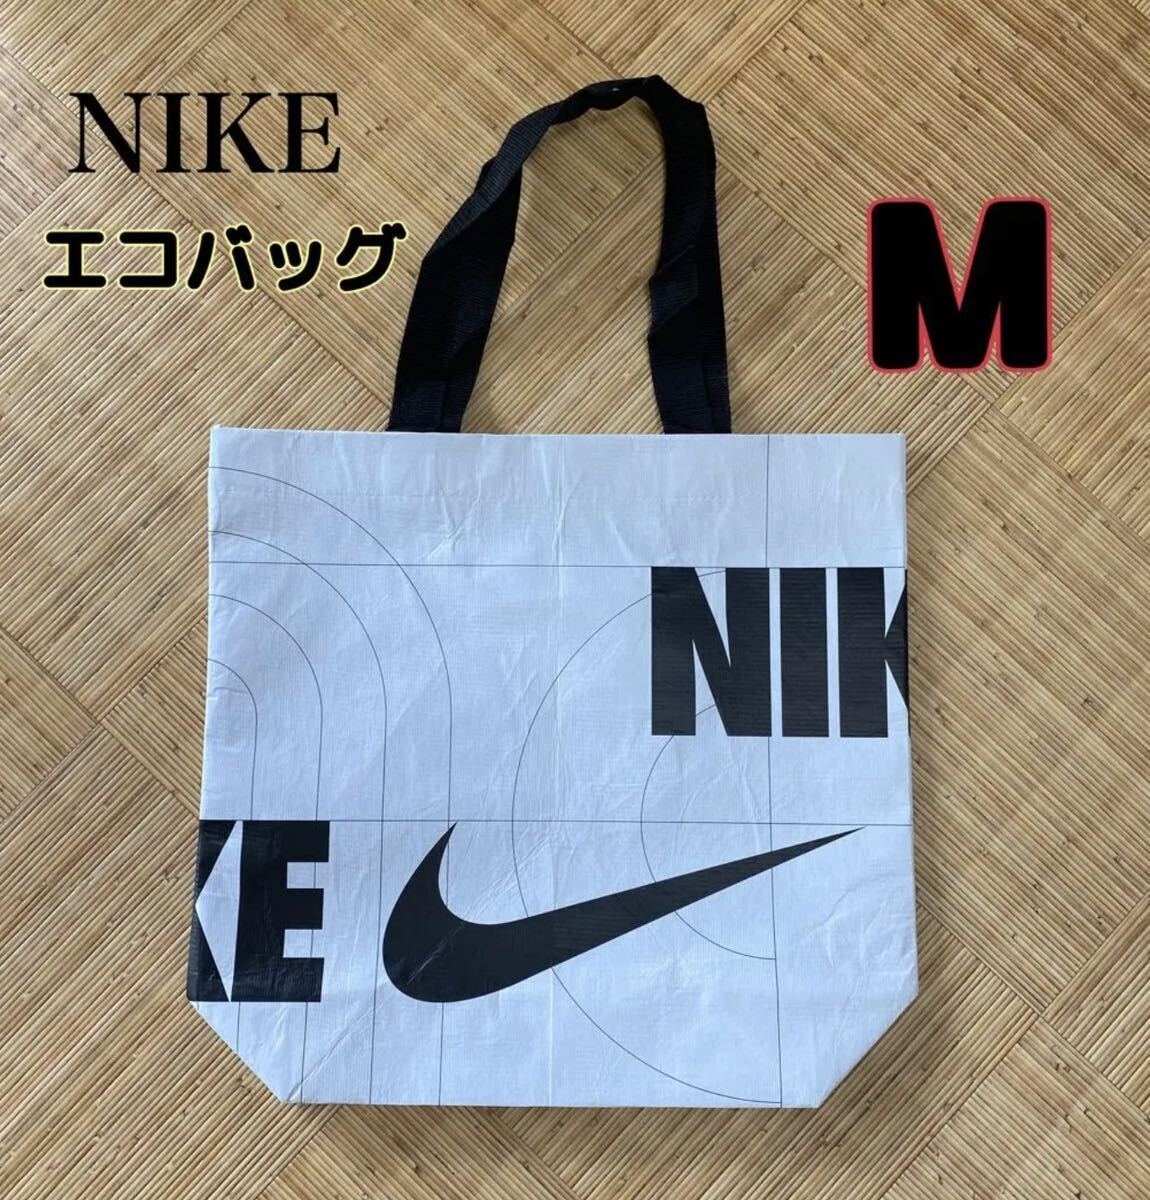 NIKE эко-сумка M размер большая сумка бассейн бассейн сумка Nike 1 листов не использовался часть магазин ограничение 